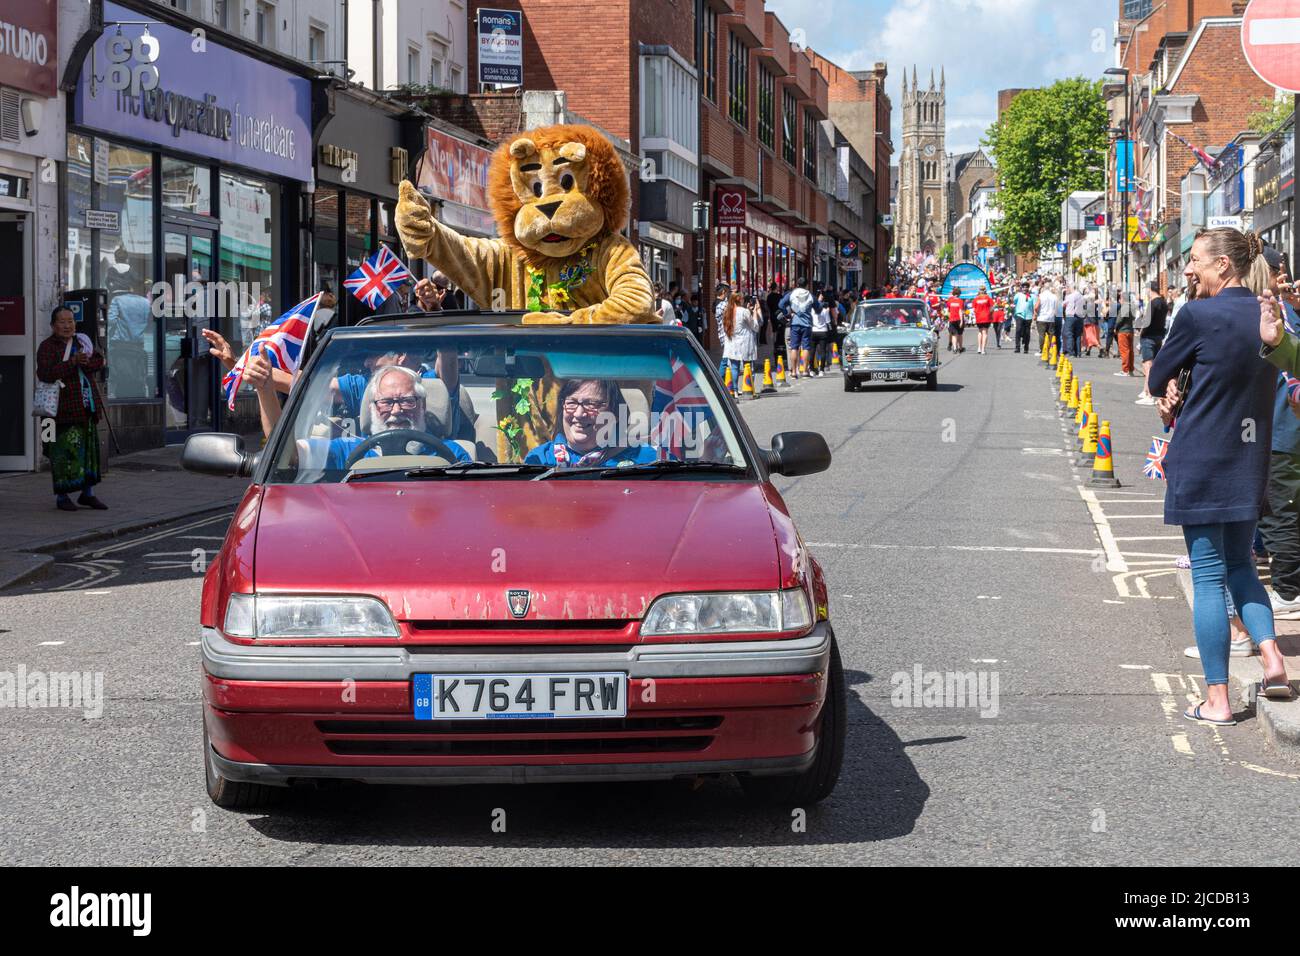 Le Grand Parade à la fête de Victoria, un événement annuel à Aldershot, Hampshire, Angleterre, Royaume-Uni. Banque D'Images